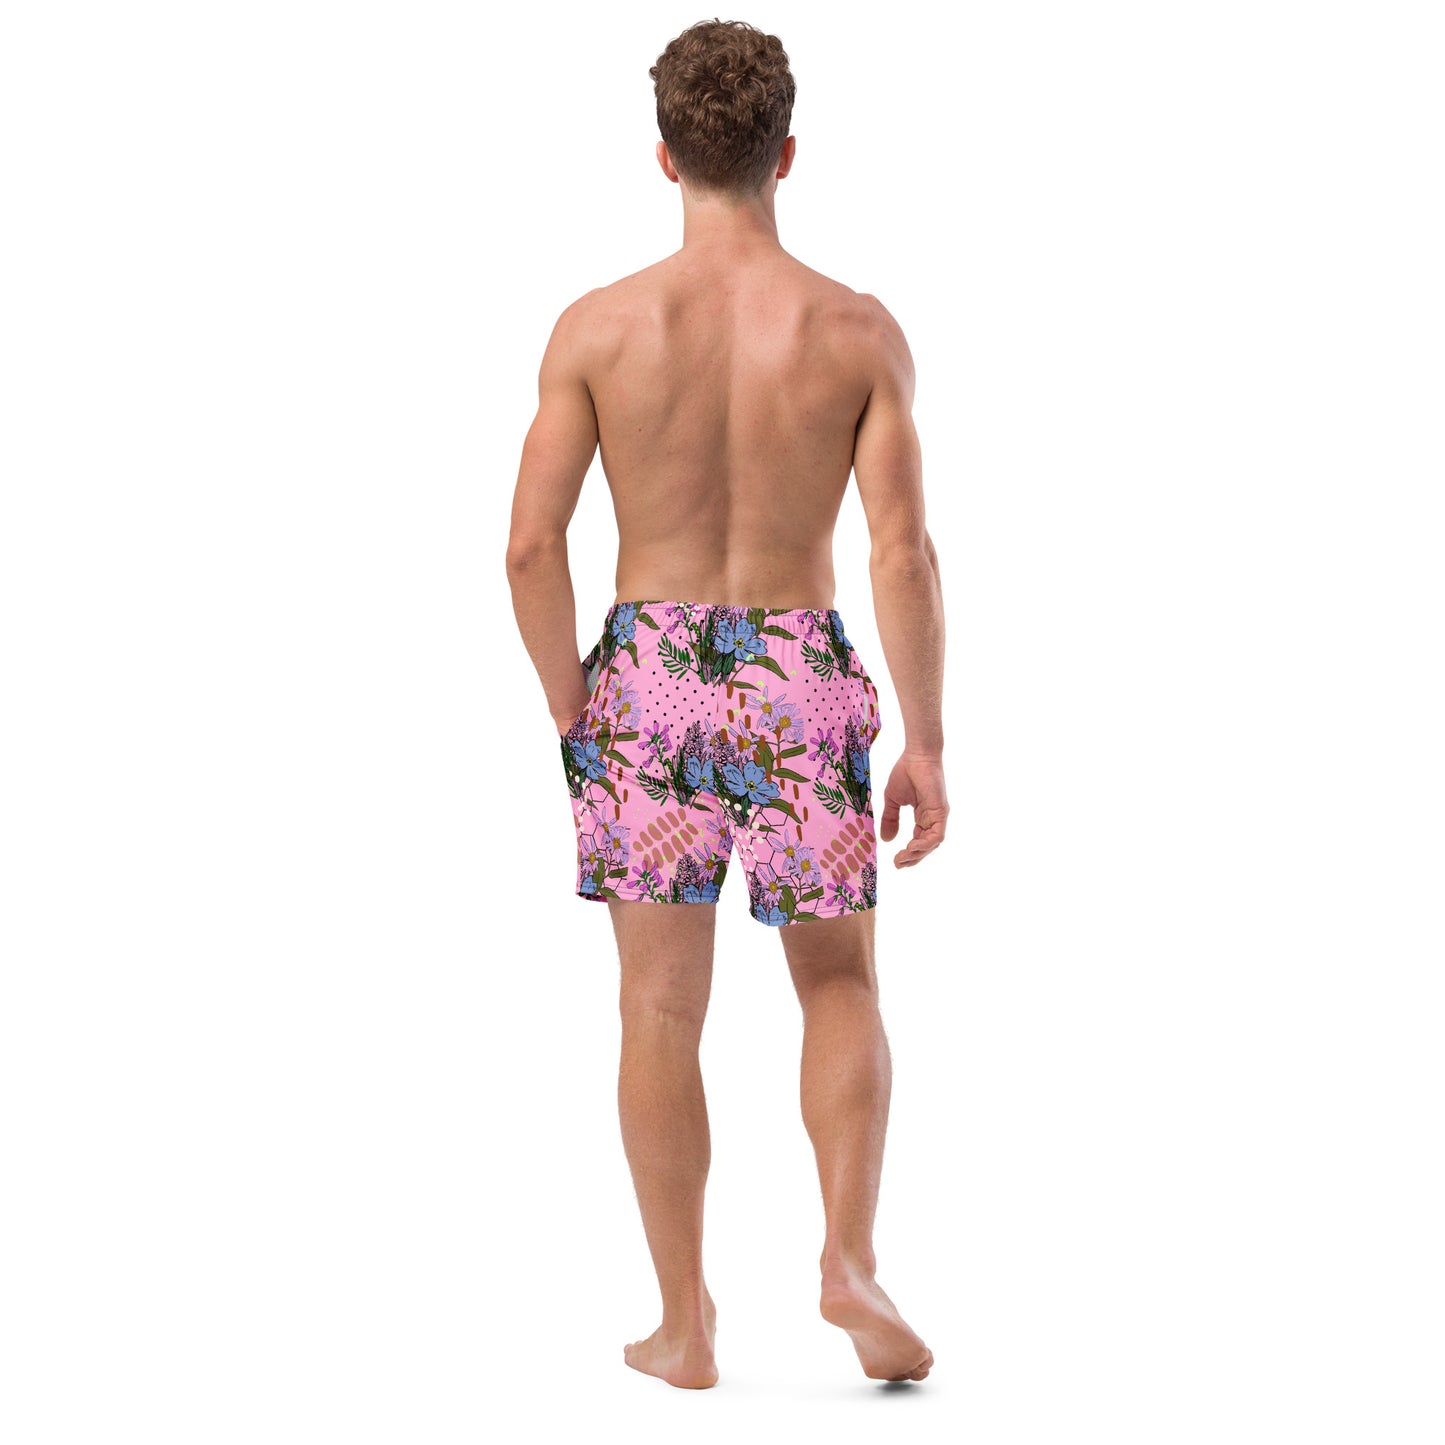 Coral Blossom Men's swim trunks